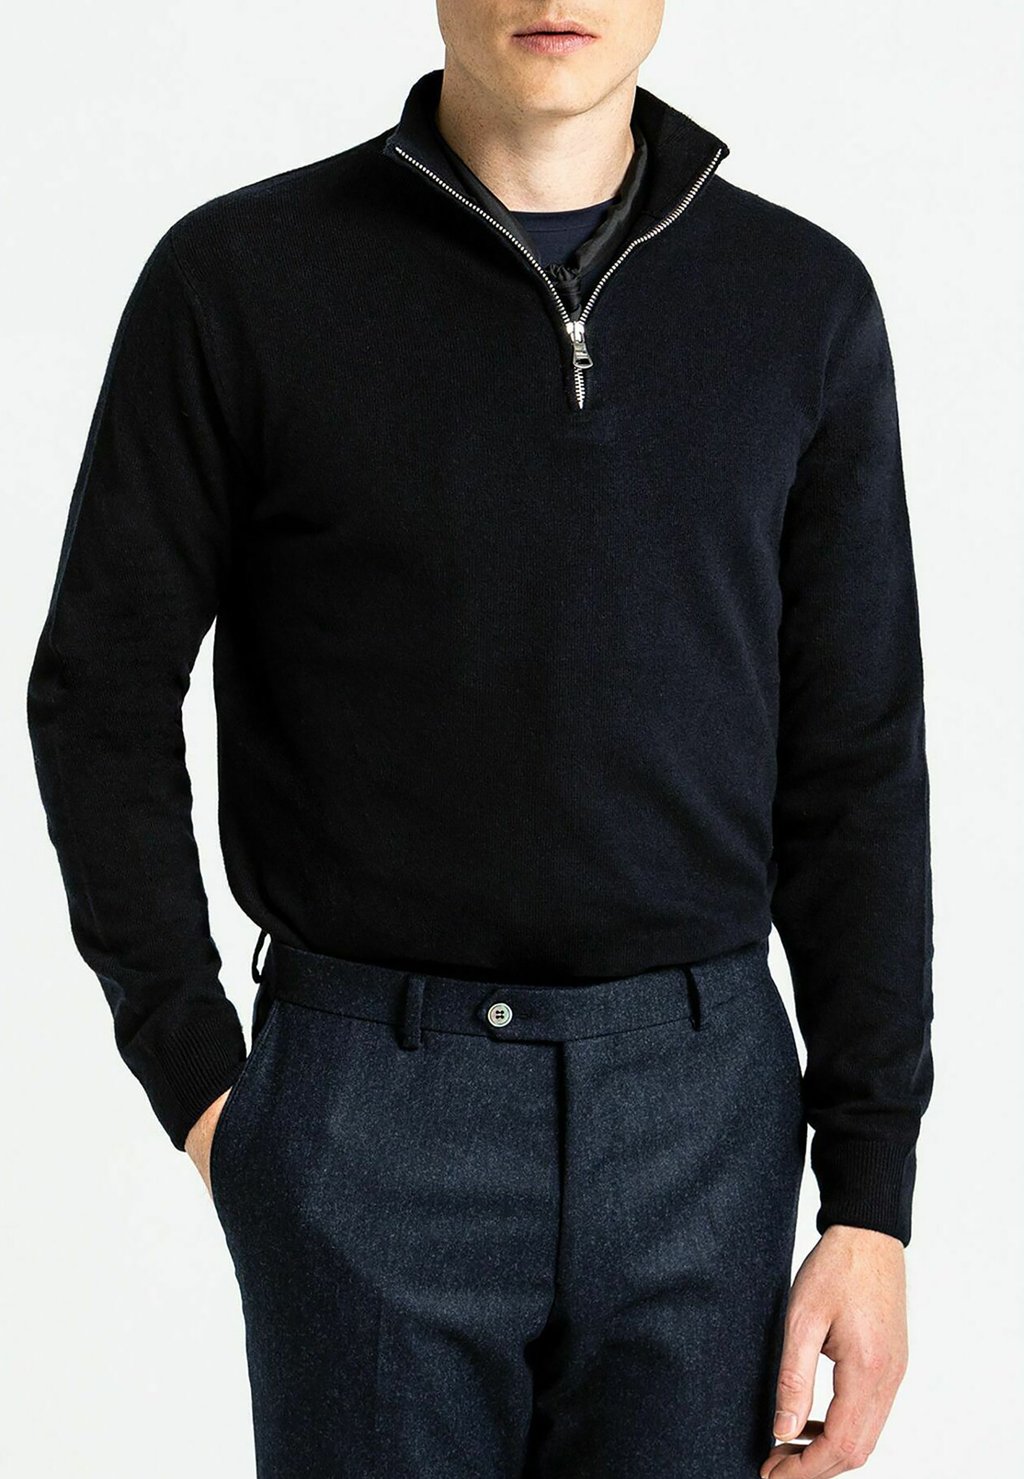 вязаный свитер patton oscar jacobson цвет dark grey Вязаный свитер PATTON Oscar Jacobson, цвет navy